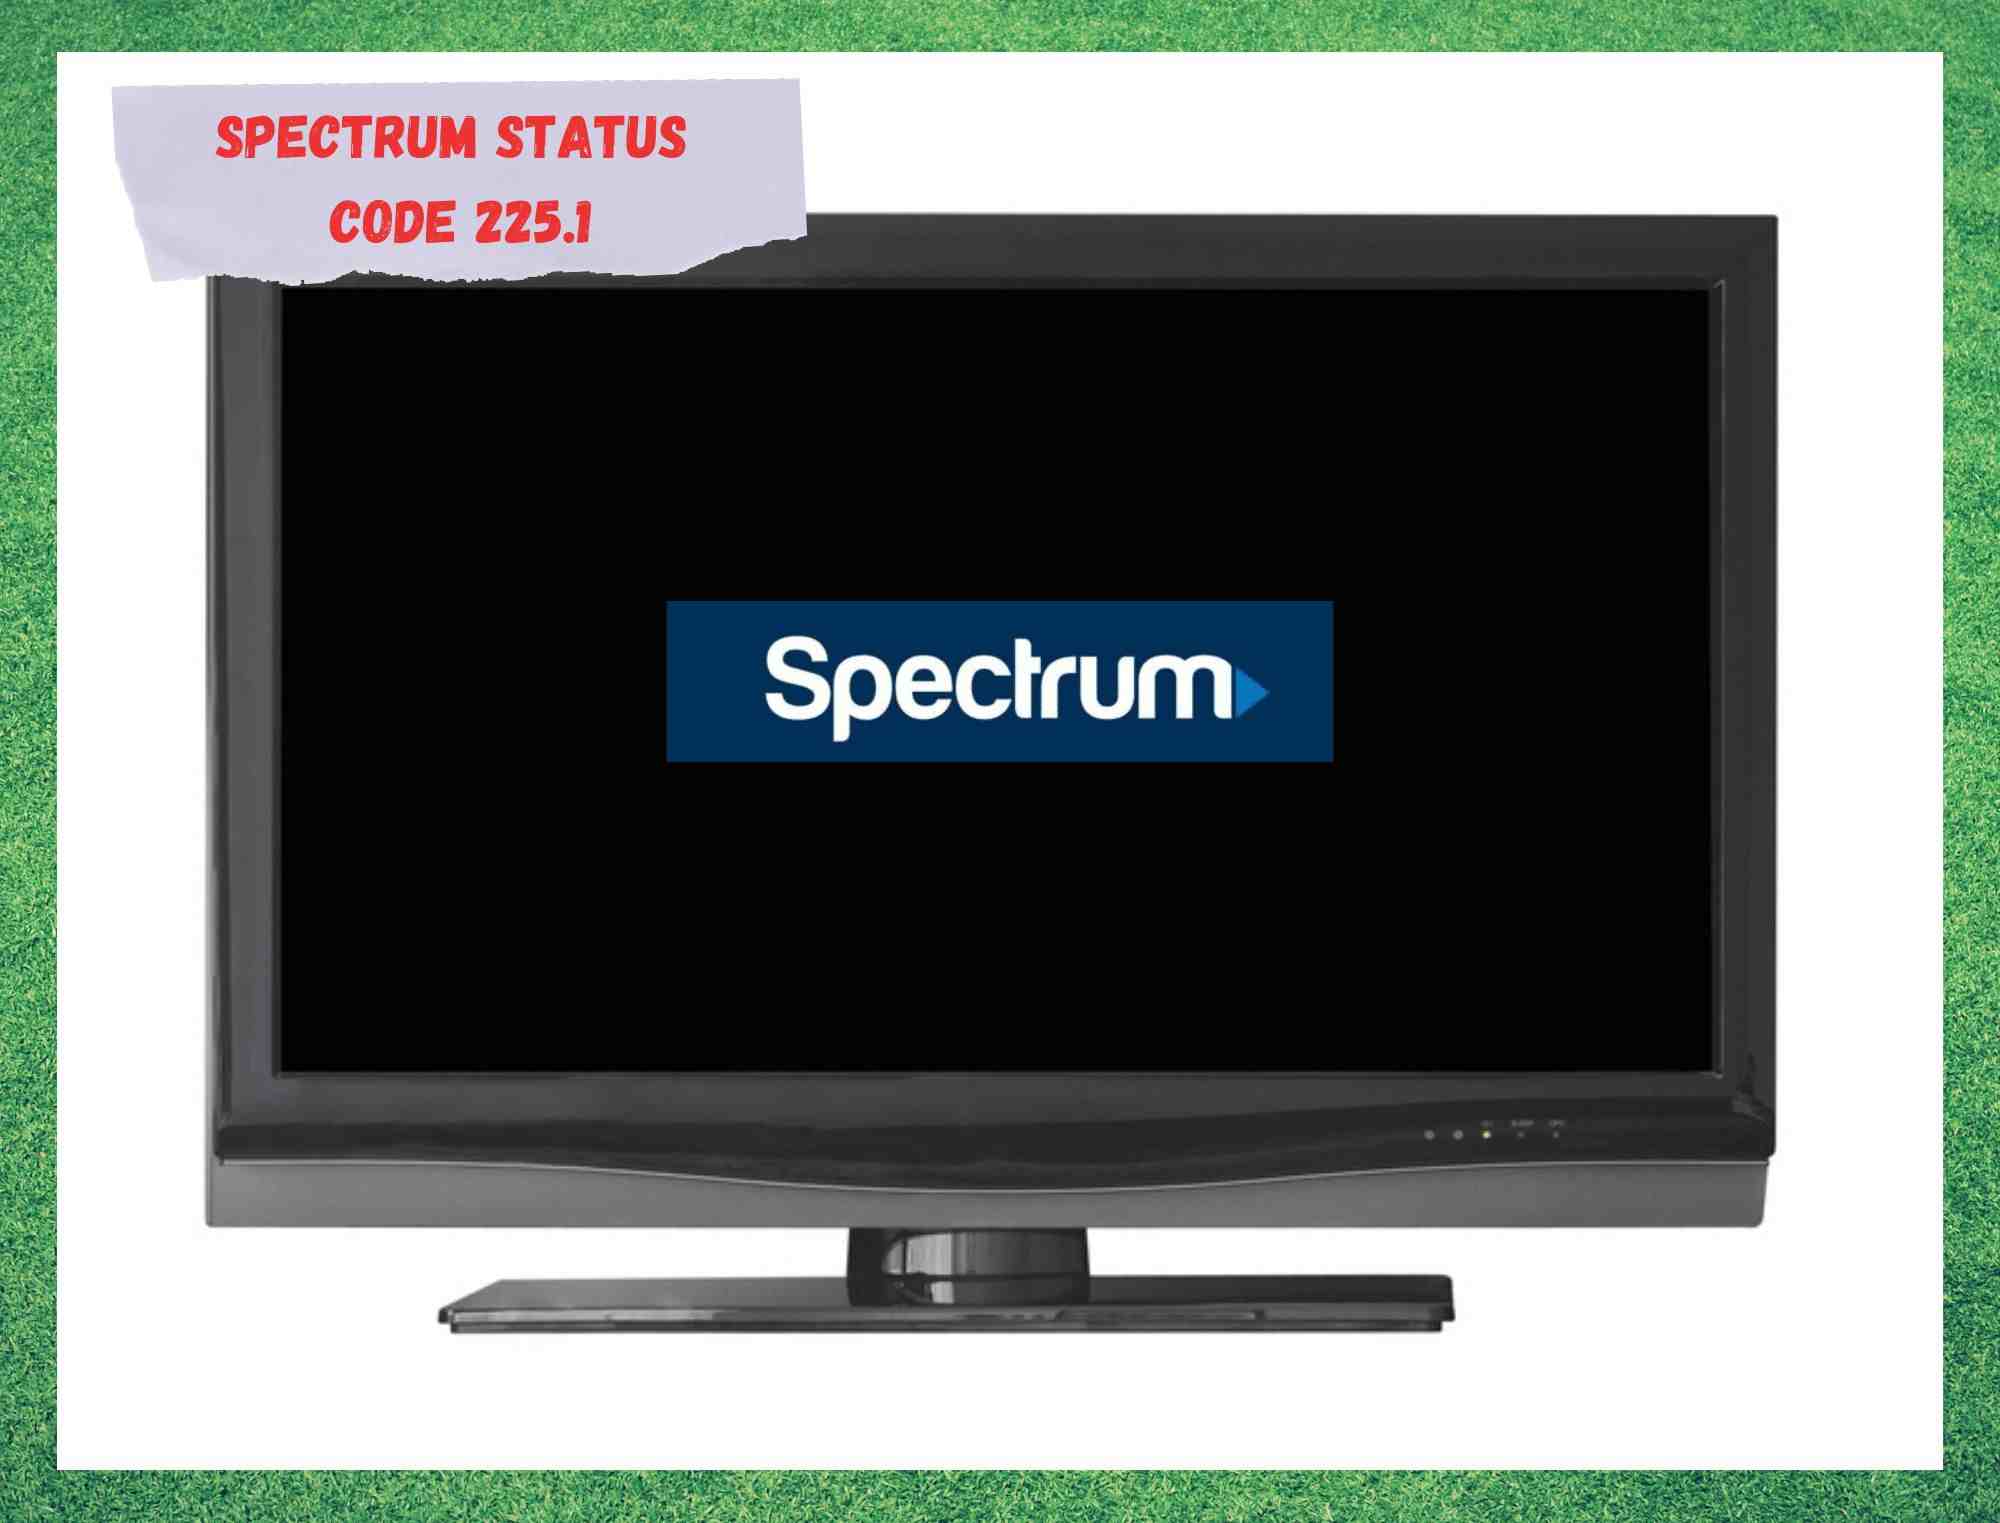 spectrum status code 225.1